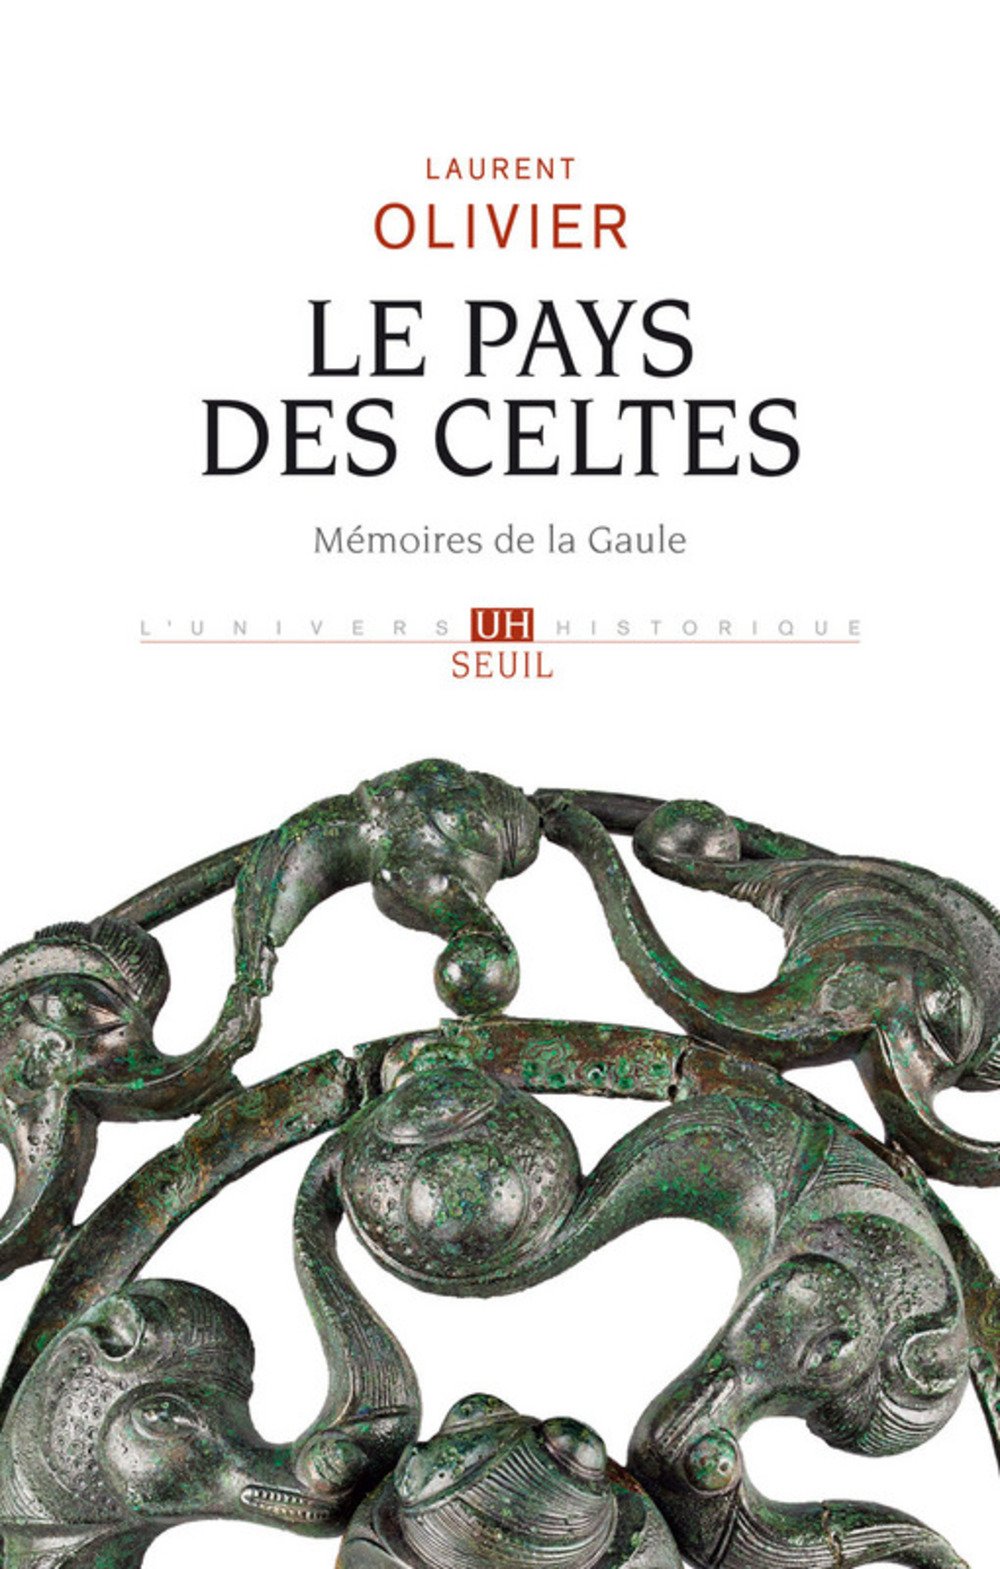 Le pays des Celtes. Mémoire de la Gaule, 2018, 336 p.